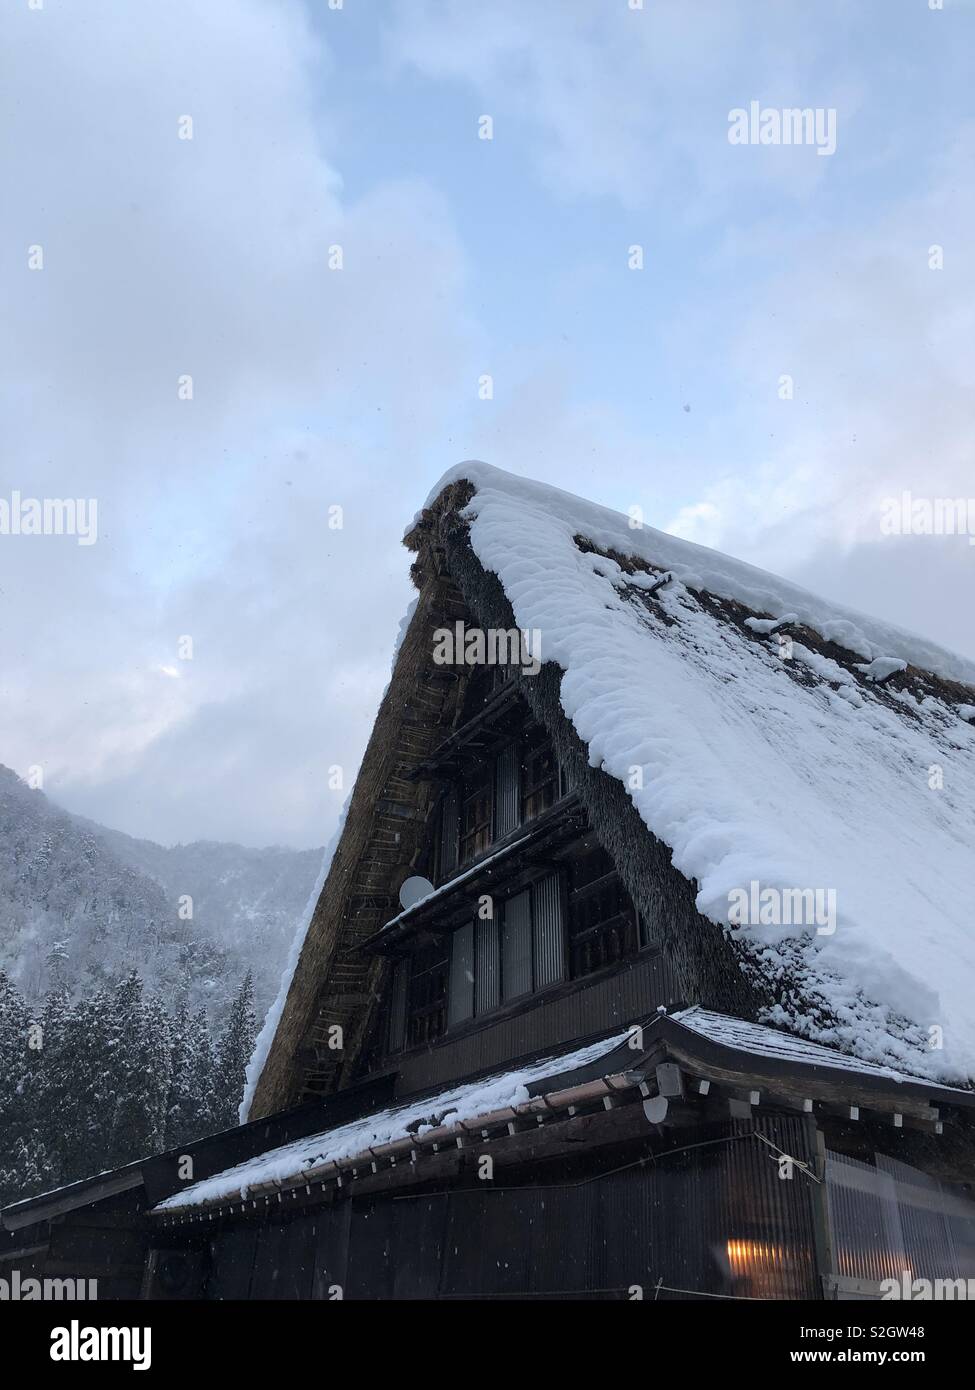 Shirakawago, sito UNESCO. Prefettura di Gifu, Giappone. Snow tappata tetto,tradizionale architettura giapponese. Foto Stock